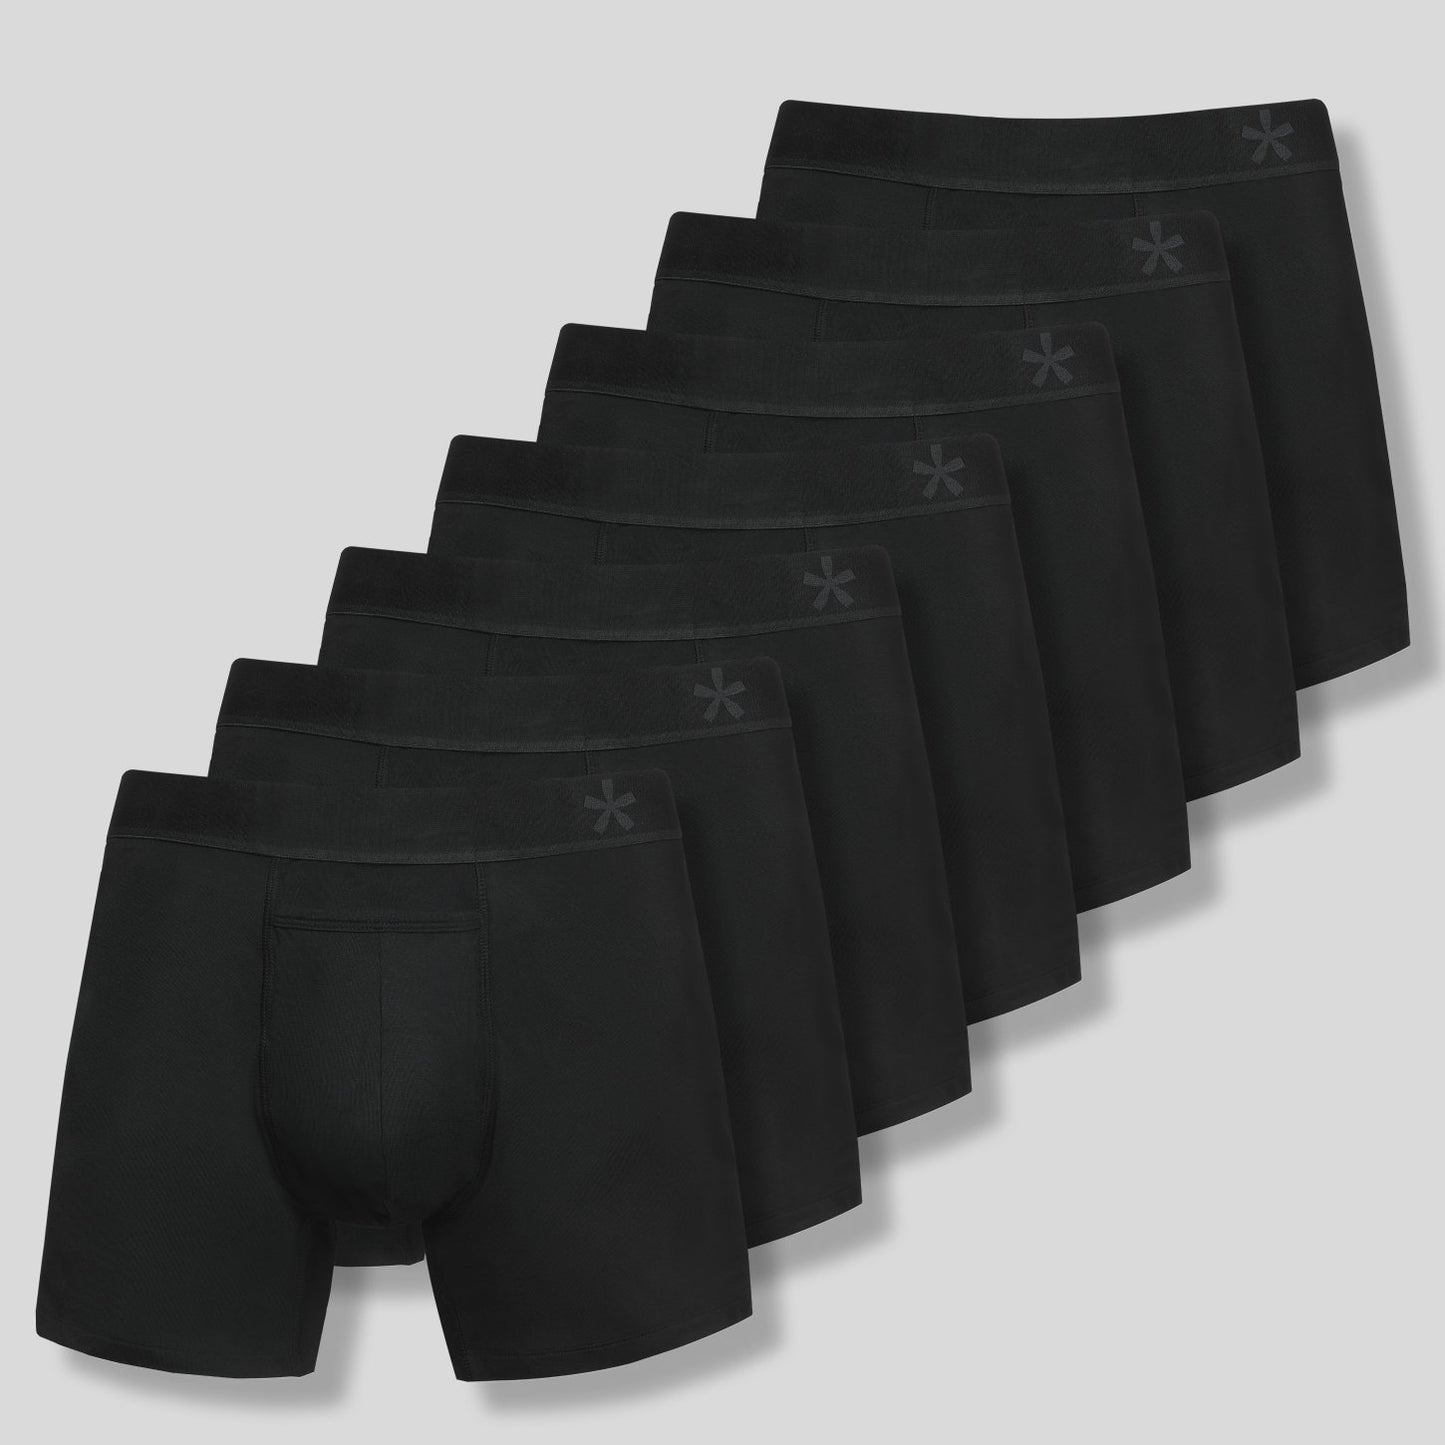 Crazy Cool Underwear® Cotton Mens Boxer Briefs Underwear 3-Pack Set Plain  Black